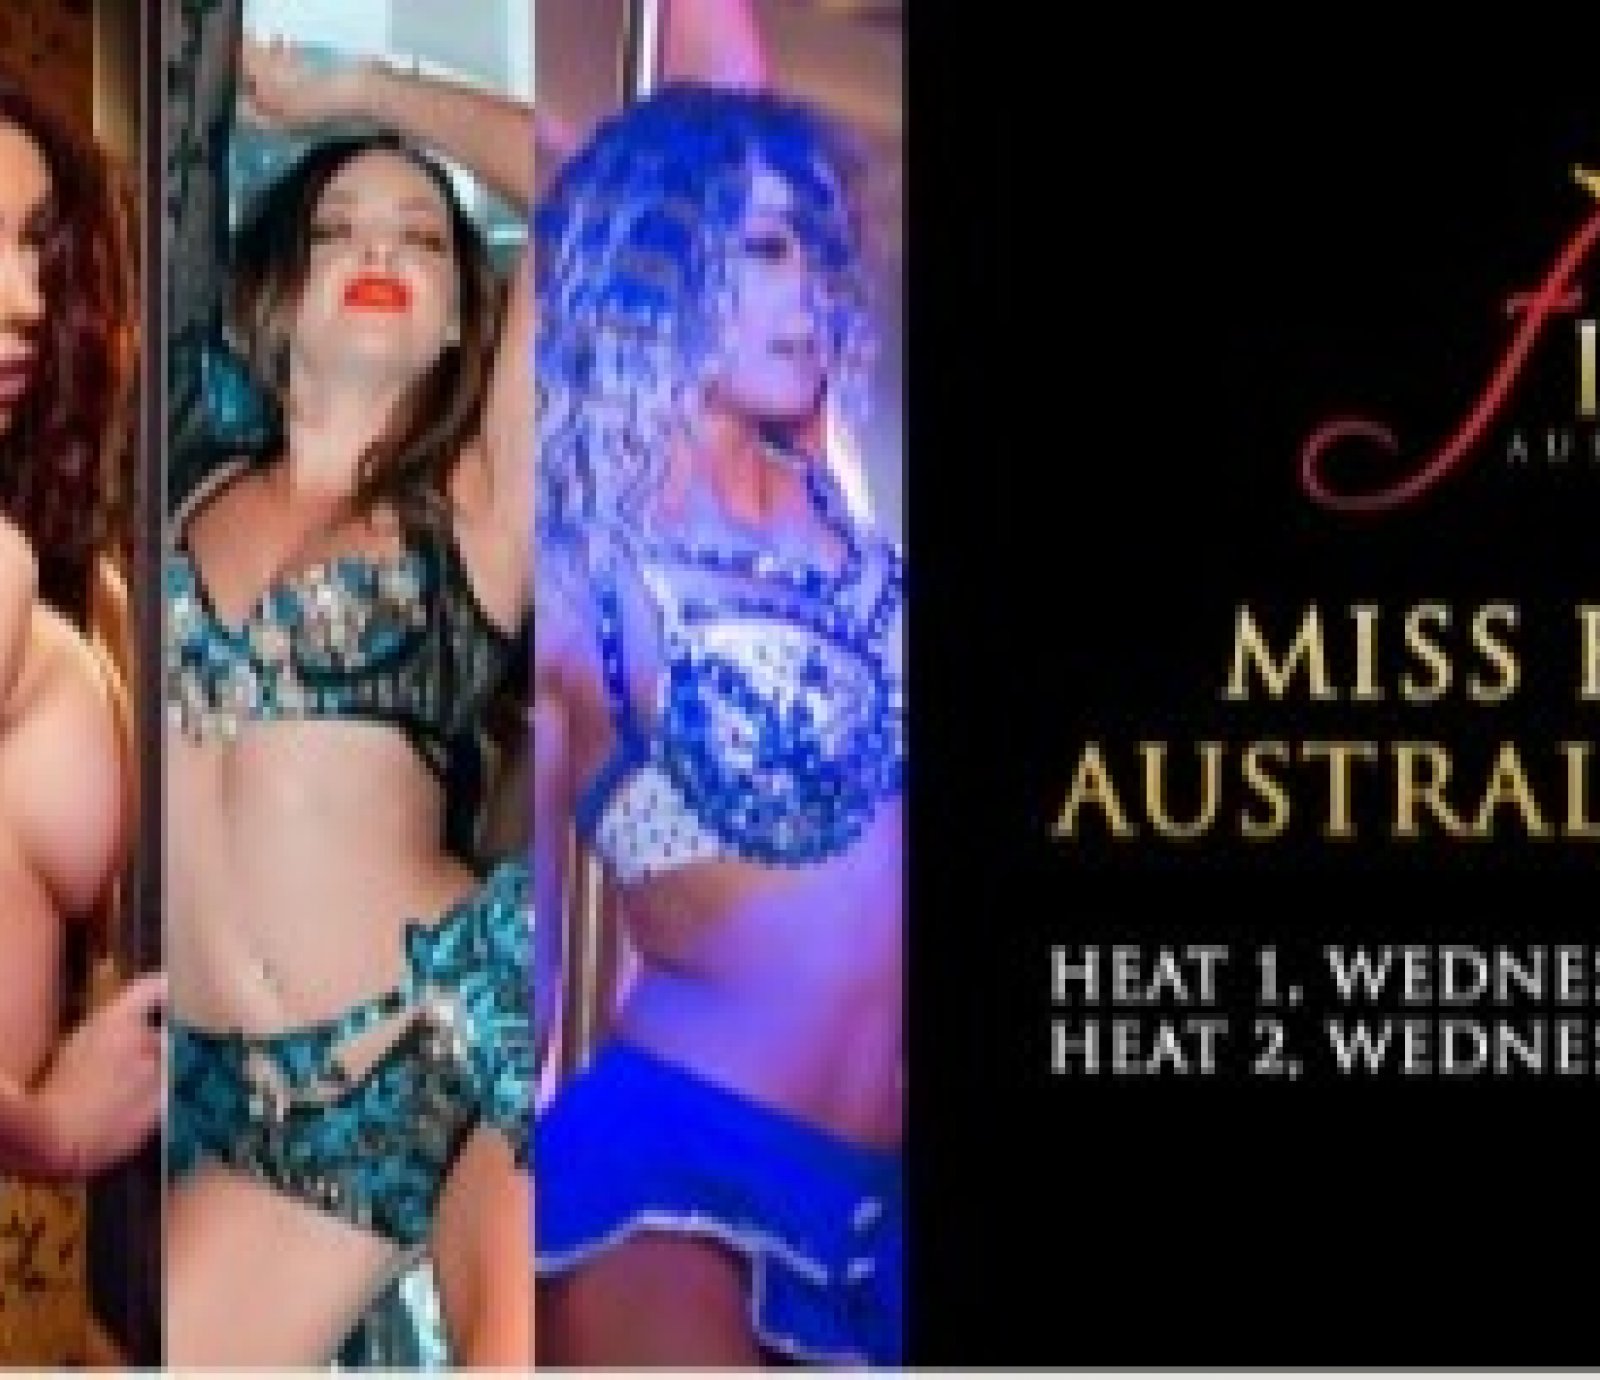 Heat 1 - Miss Firm Australia 2022